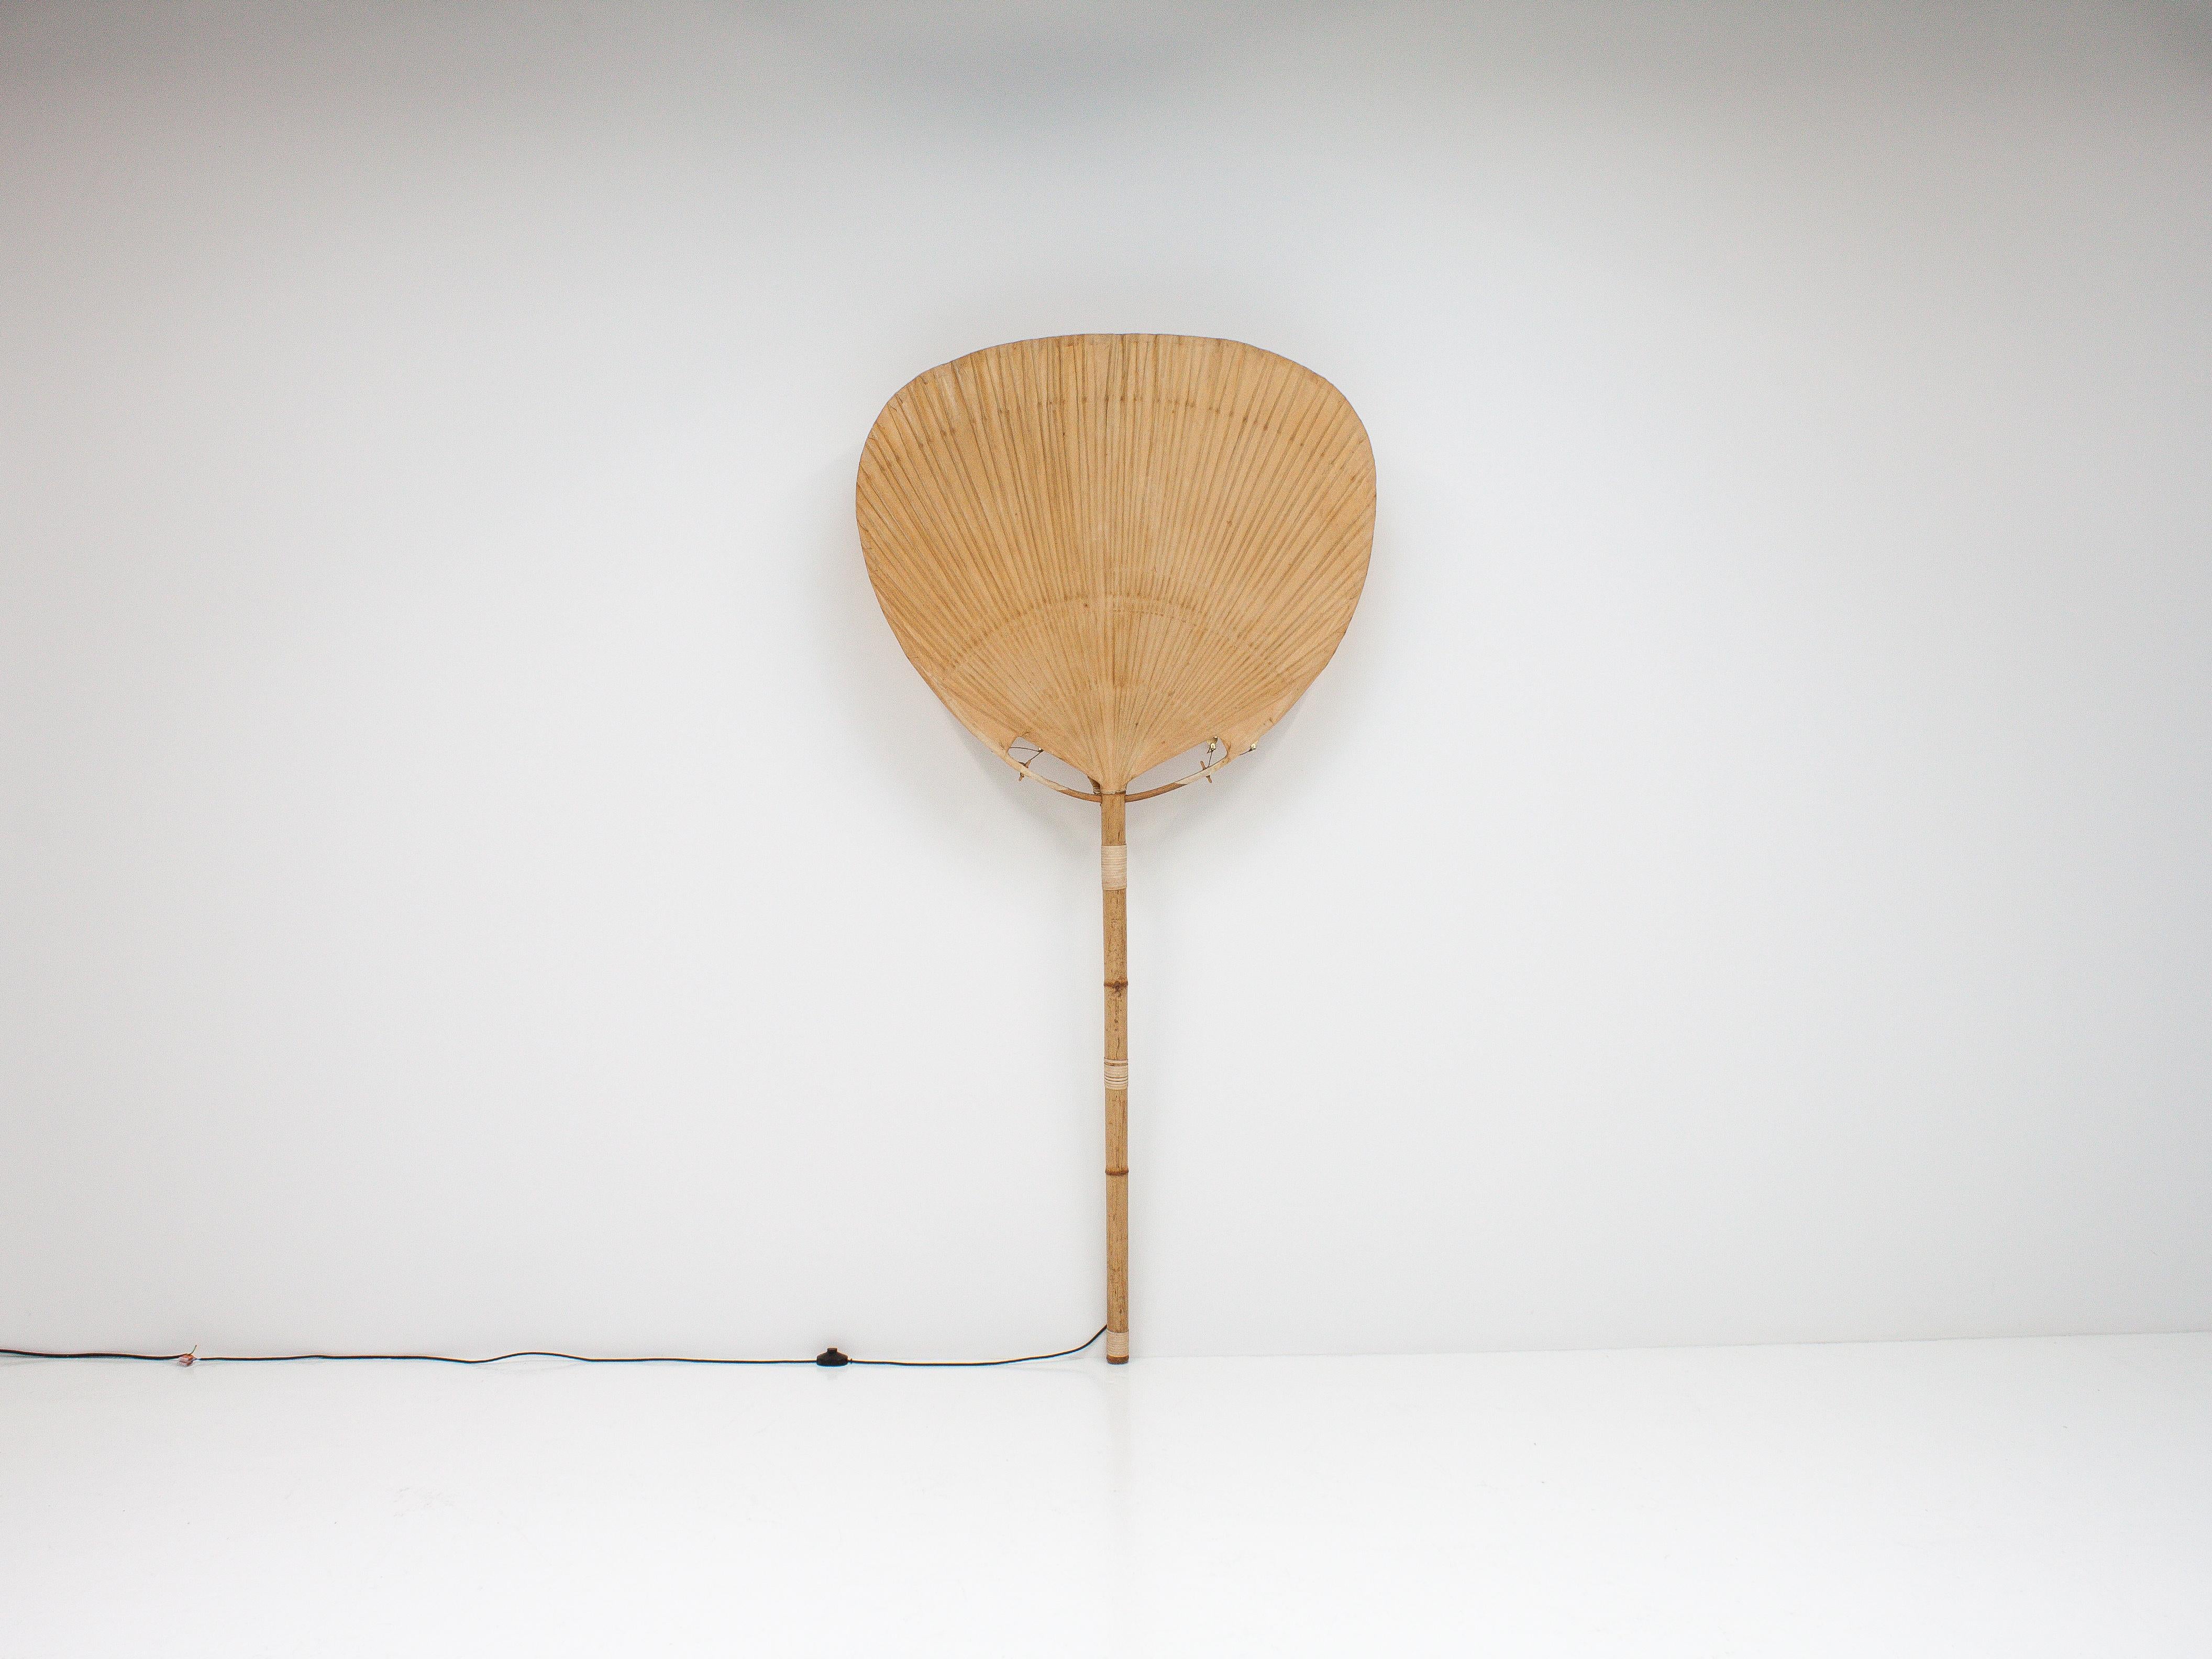 Bamboo Ingo Maurer “Uchiwa I” Large Floor/Wall Lamp for M Design, Germany, 1970s